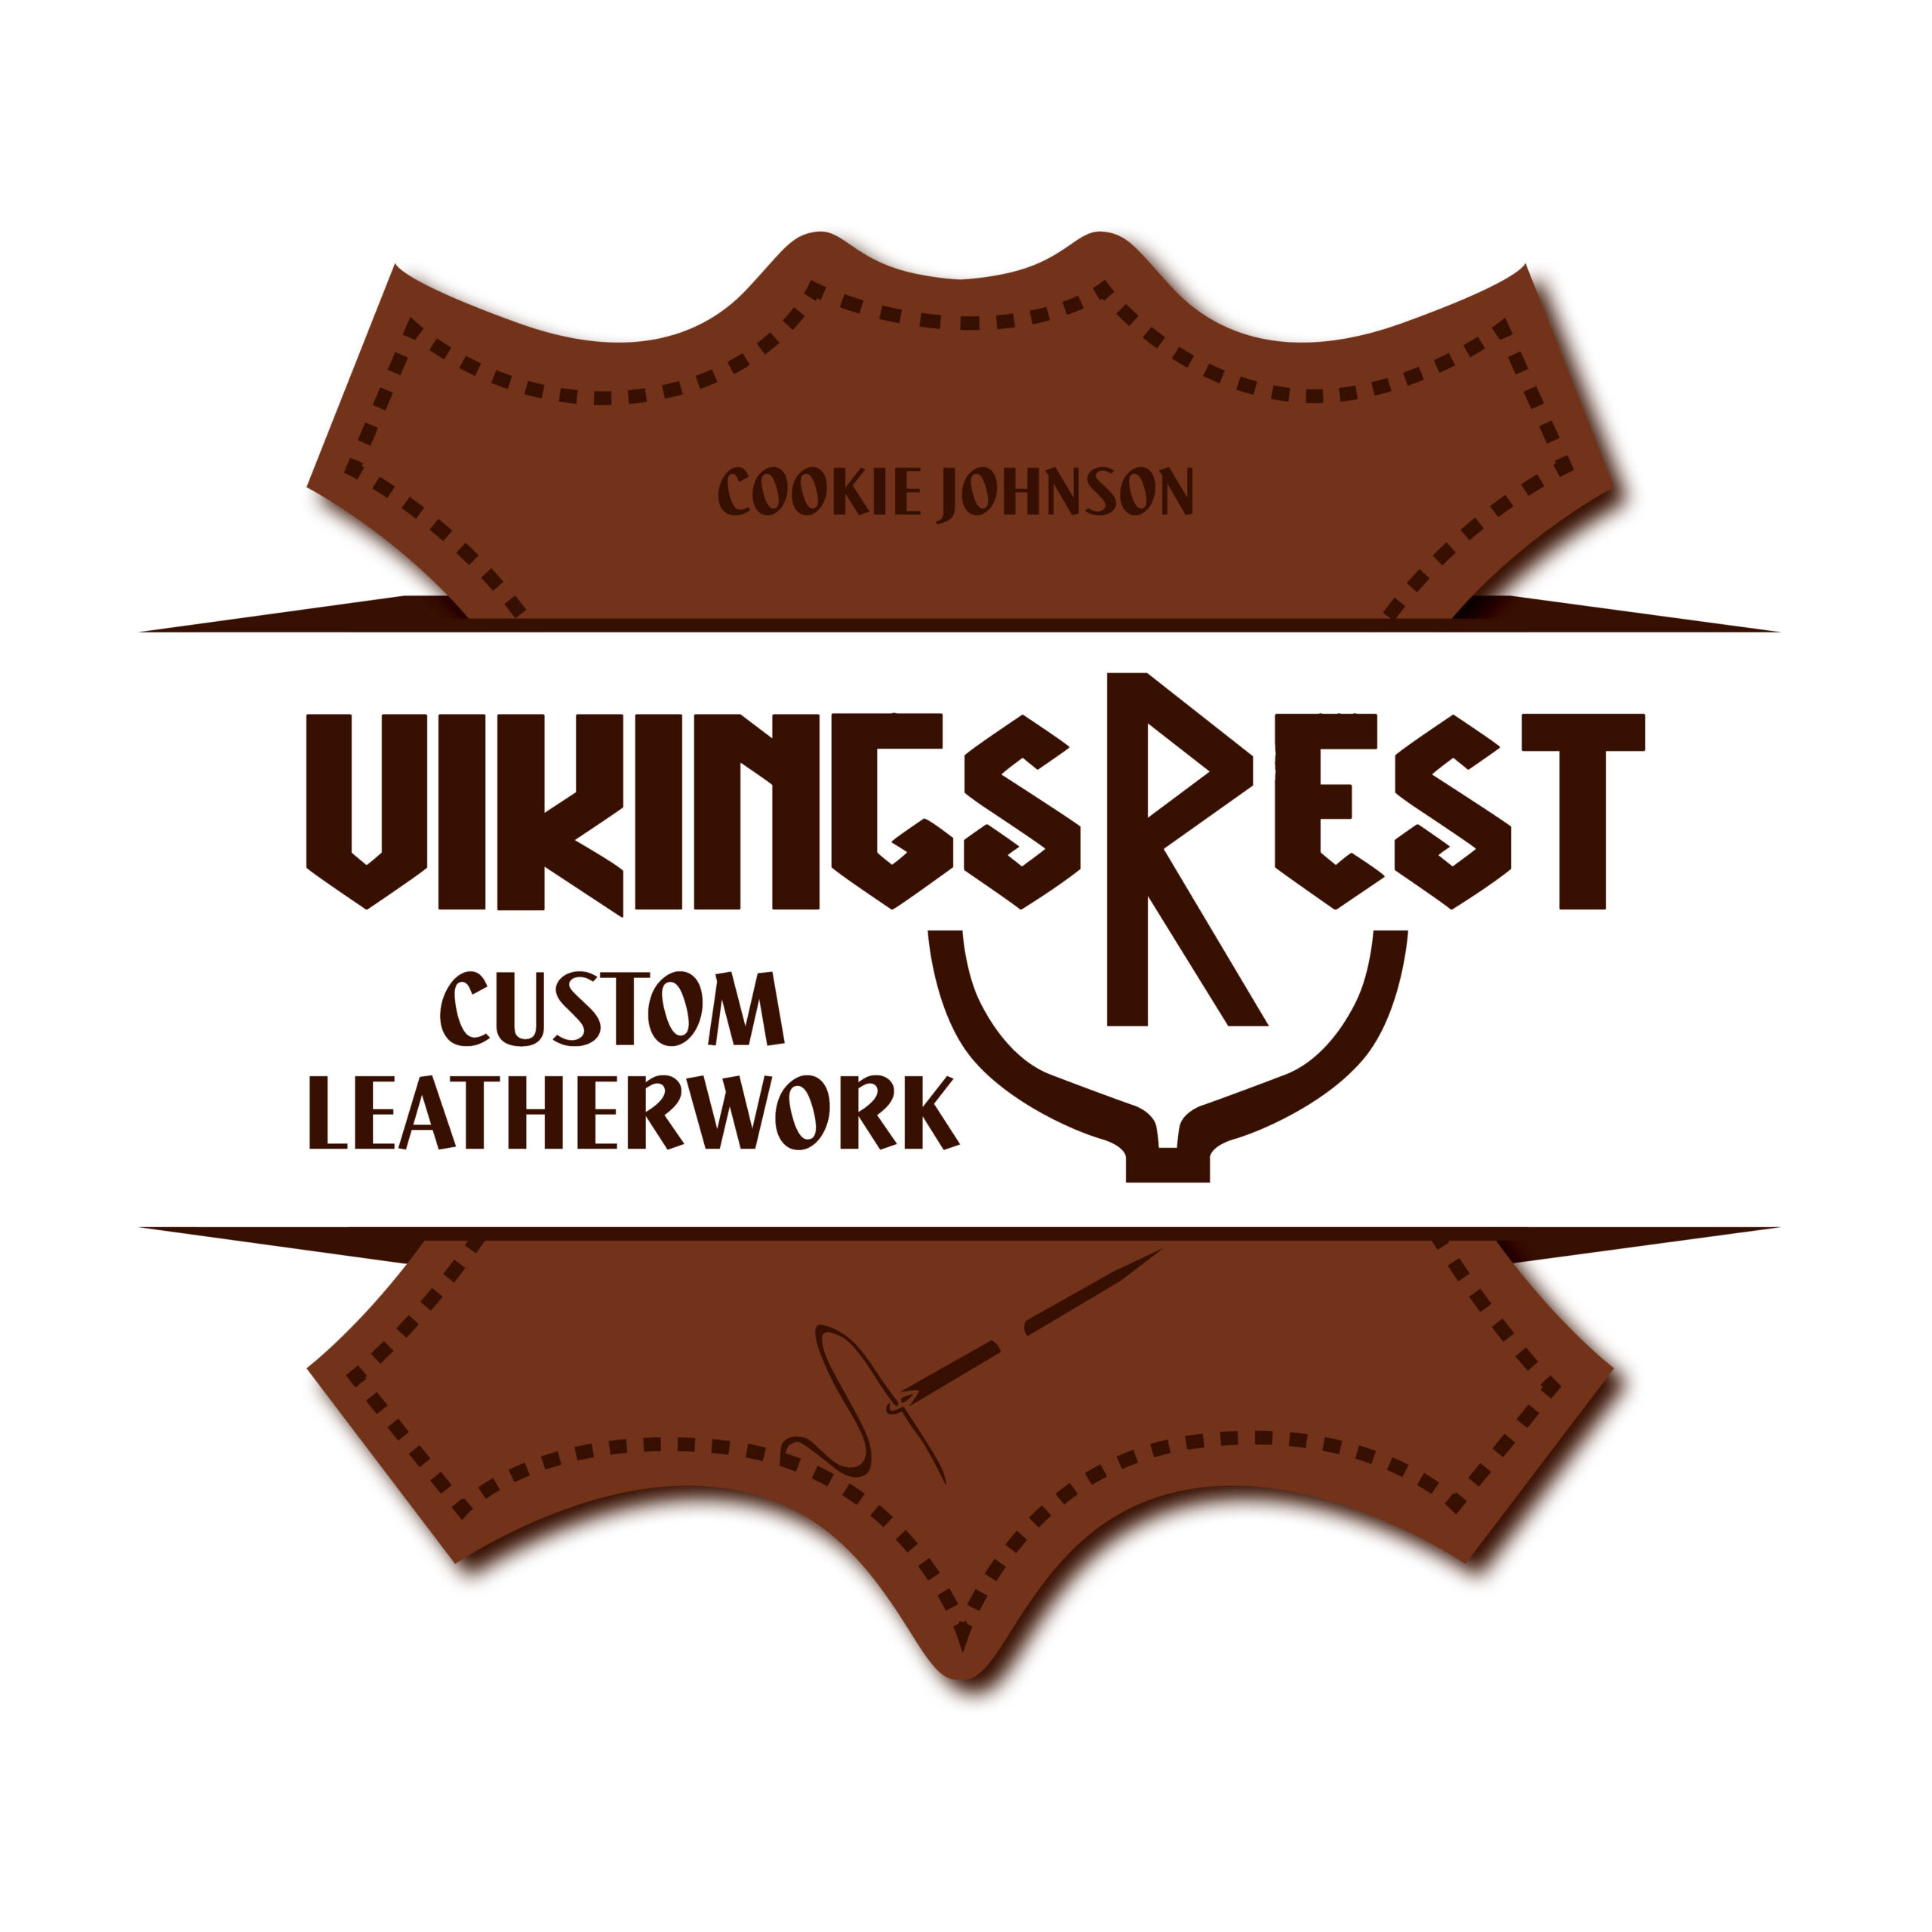 Vikings Rest Custom Leatherwork 